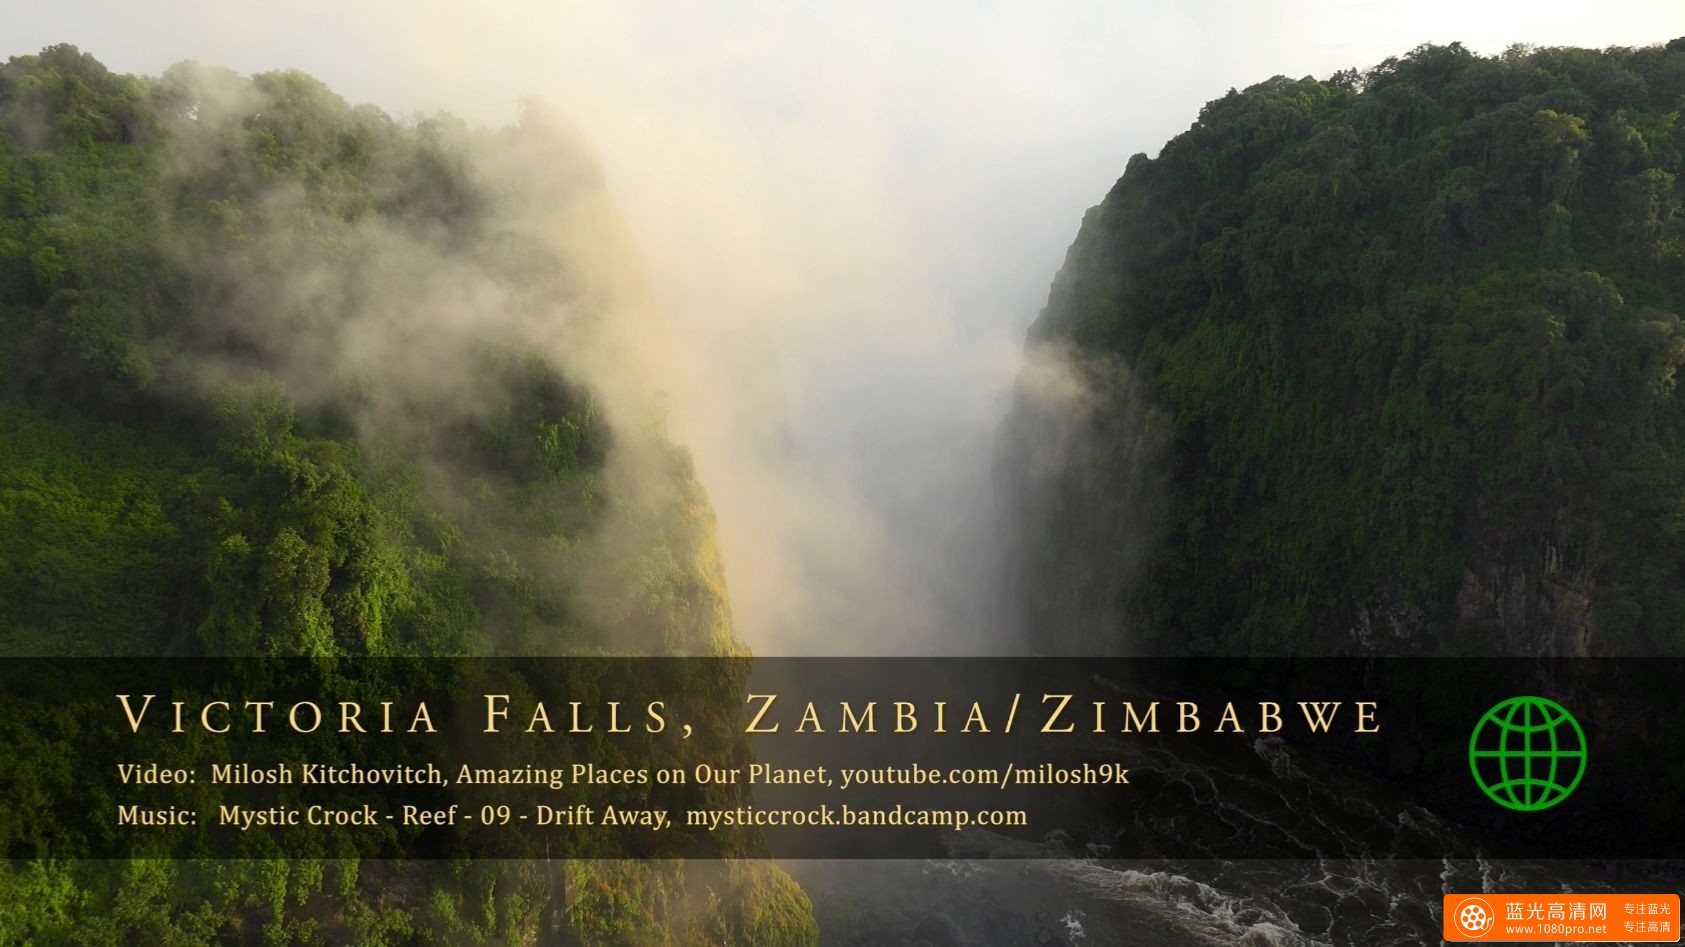 赞比亚和津巴布韦 - 维多利亚瀑布 2017Victoria Falls, Zambia & Zimbabwe in 4K Ultra HD [2160P/MKV/928MB]-1.jpg